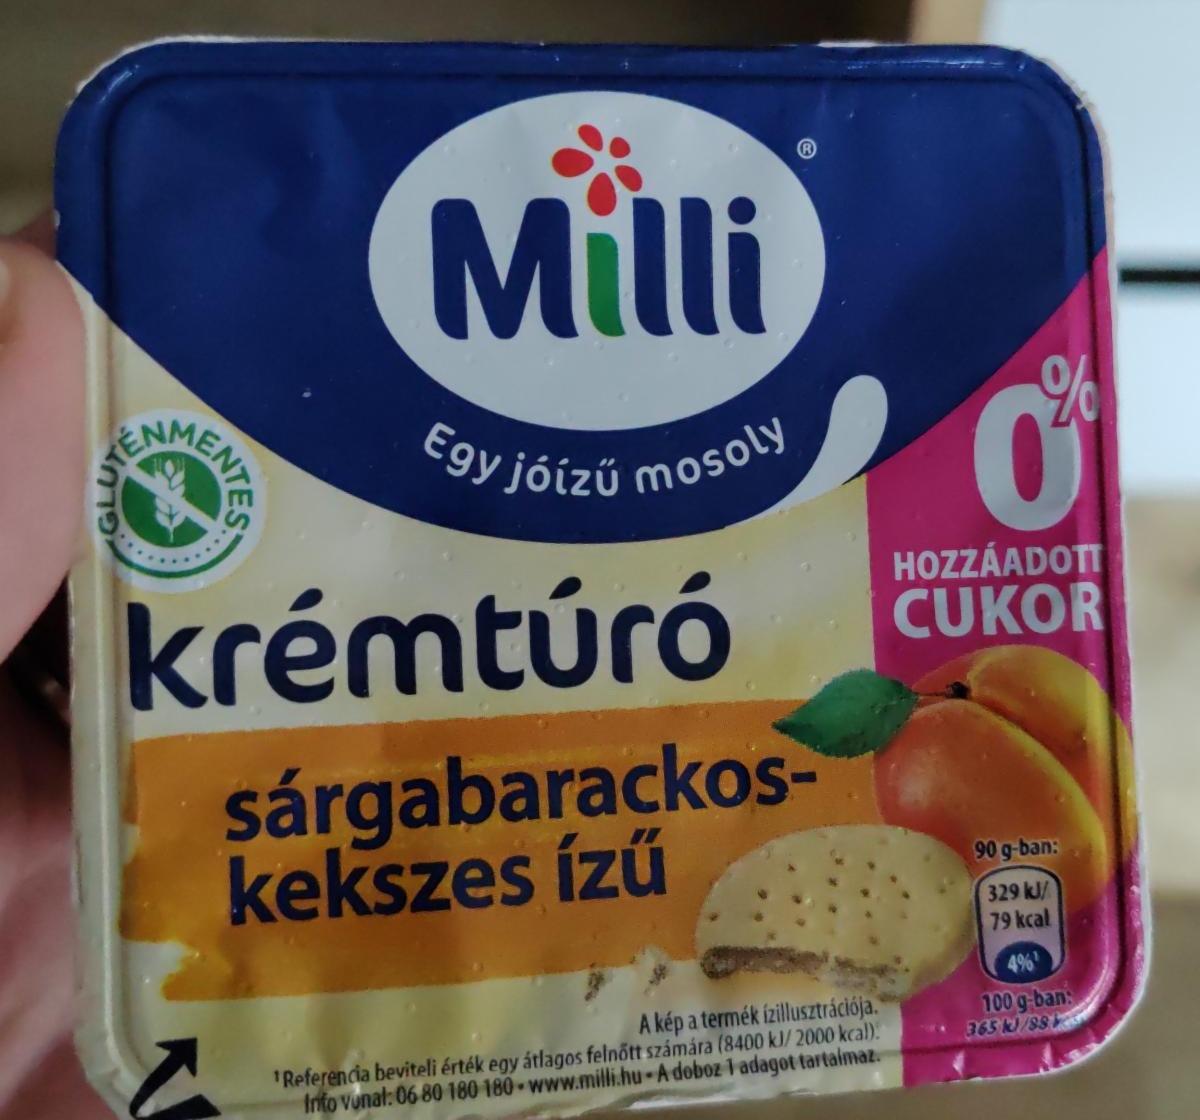 Fotografie - Krémtúró sárgabarackos-kekszes ízű Milli